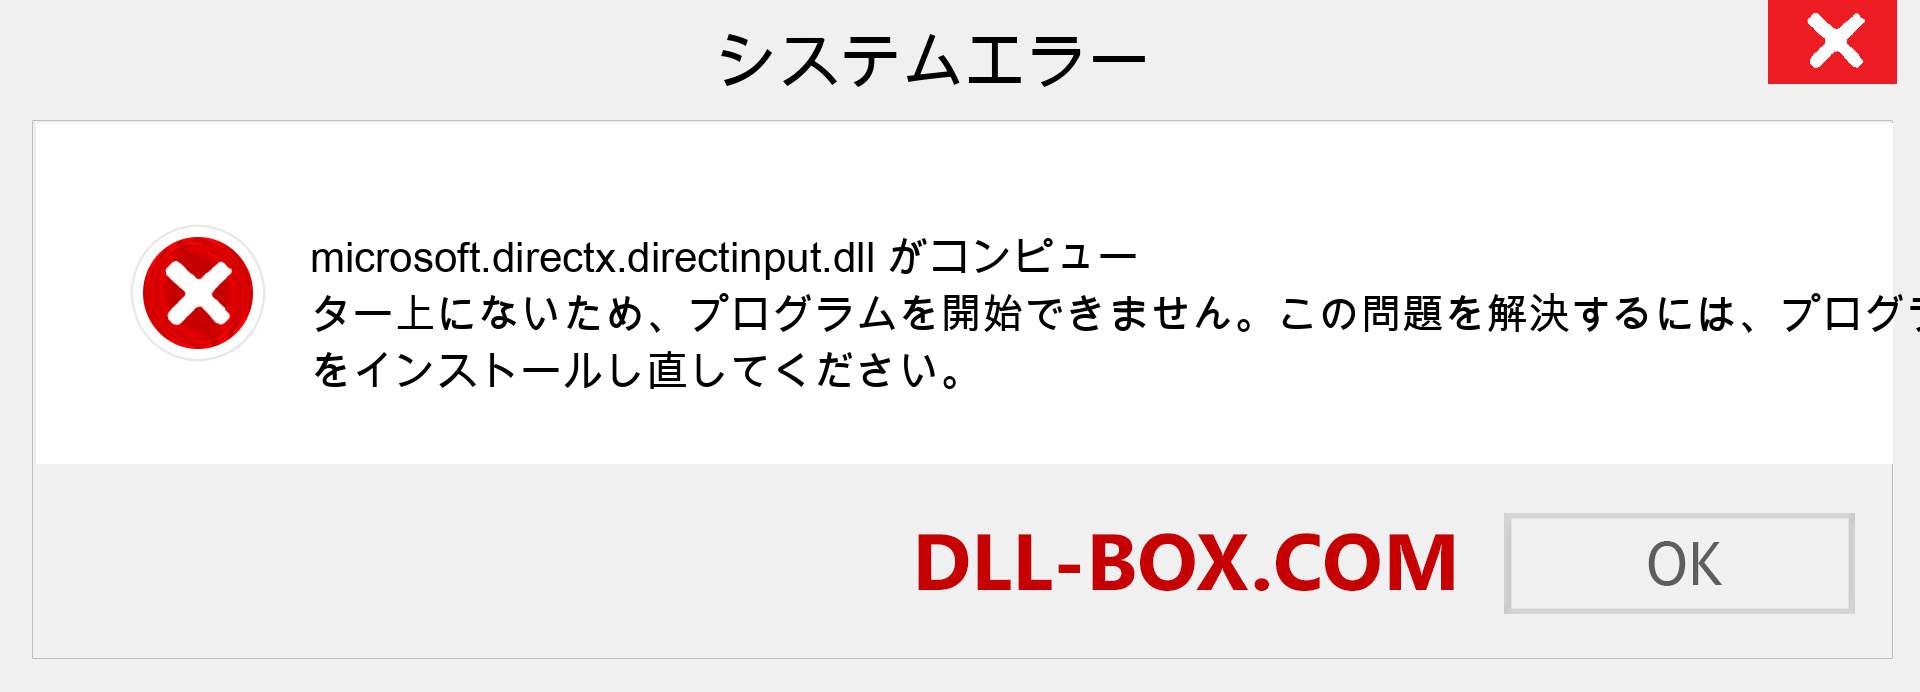 microsoft.directx.directinput.dllファイルがありませんか？ Windows 7、8、10用にダウンロード-Windows、写真、画像でmicrosoft.directx.directinputdllの欠落エラーを修正